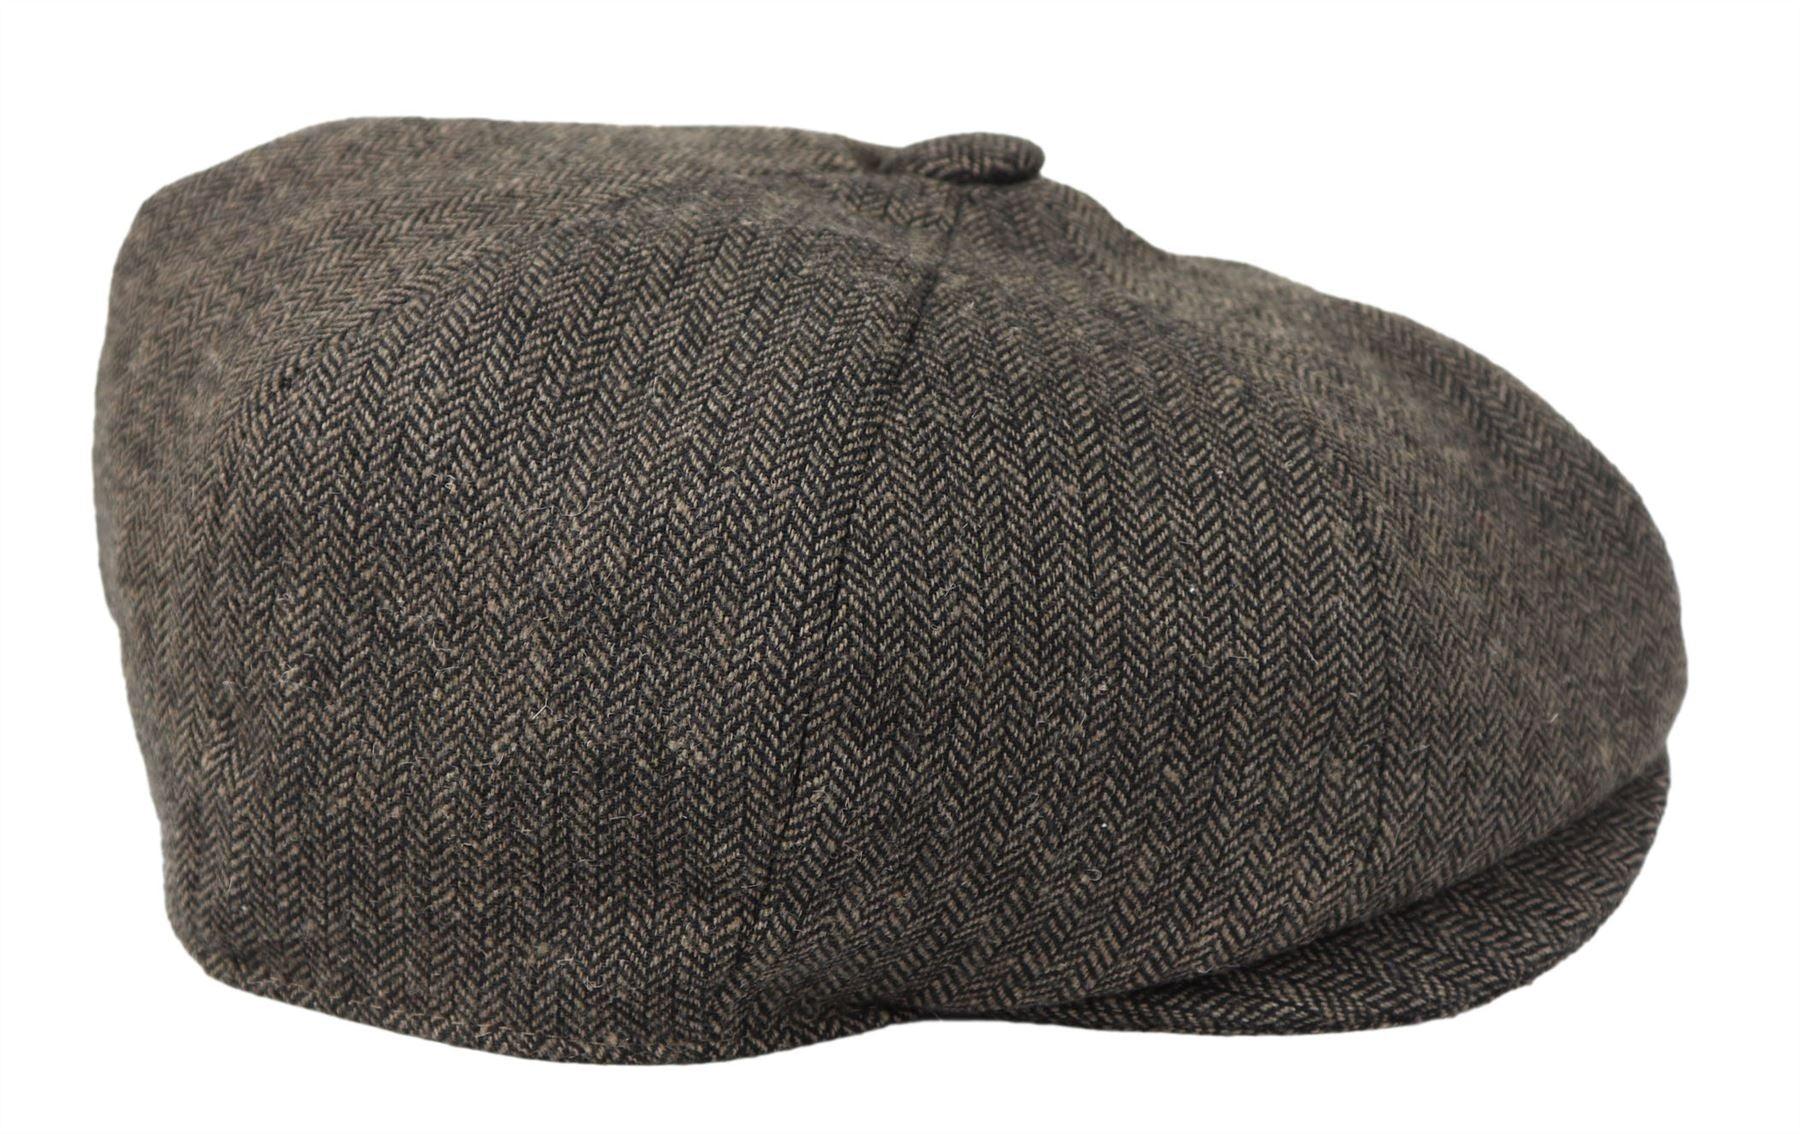 Mens Flatcap Hat Baker Boy 8 Panel Grandad Tweed Herringbone Brown Grey Vintage-TruClothing